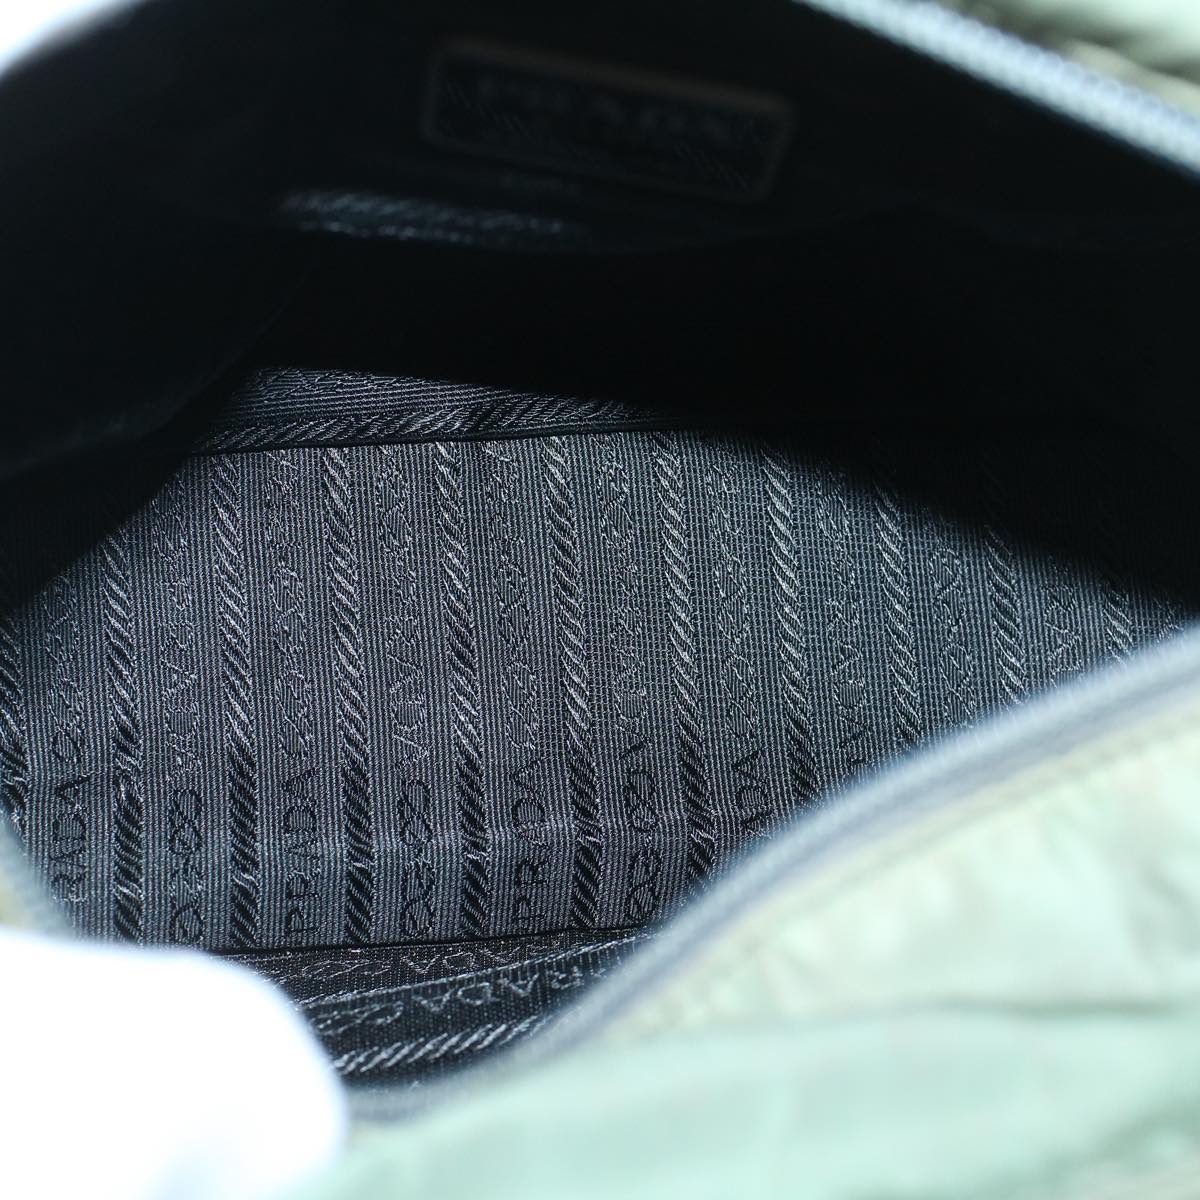 PRADA Hand Bag Nylon Khaki Auth 60252